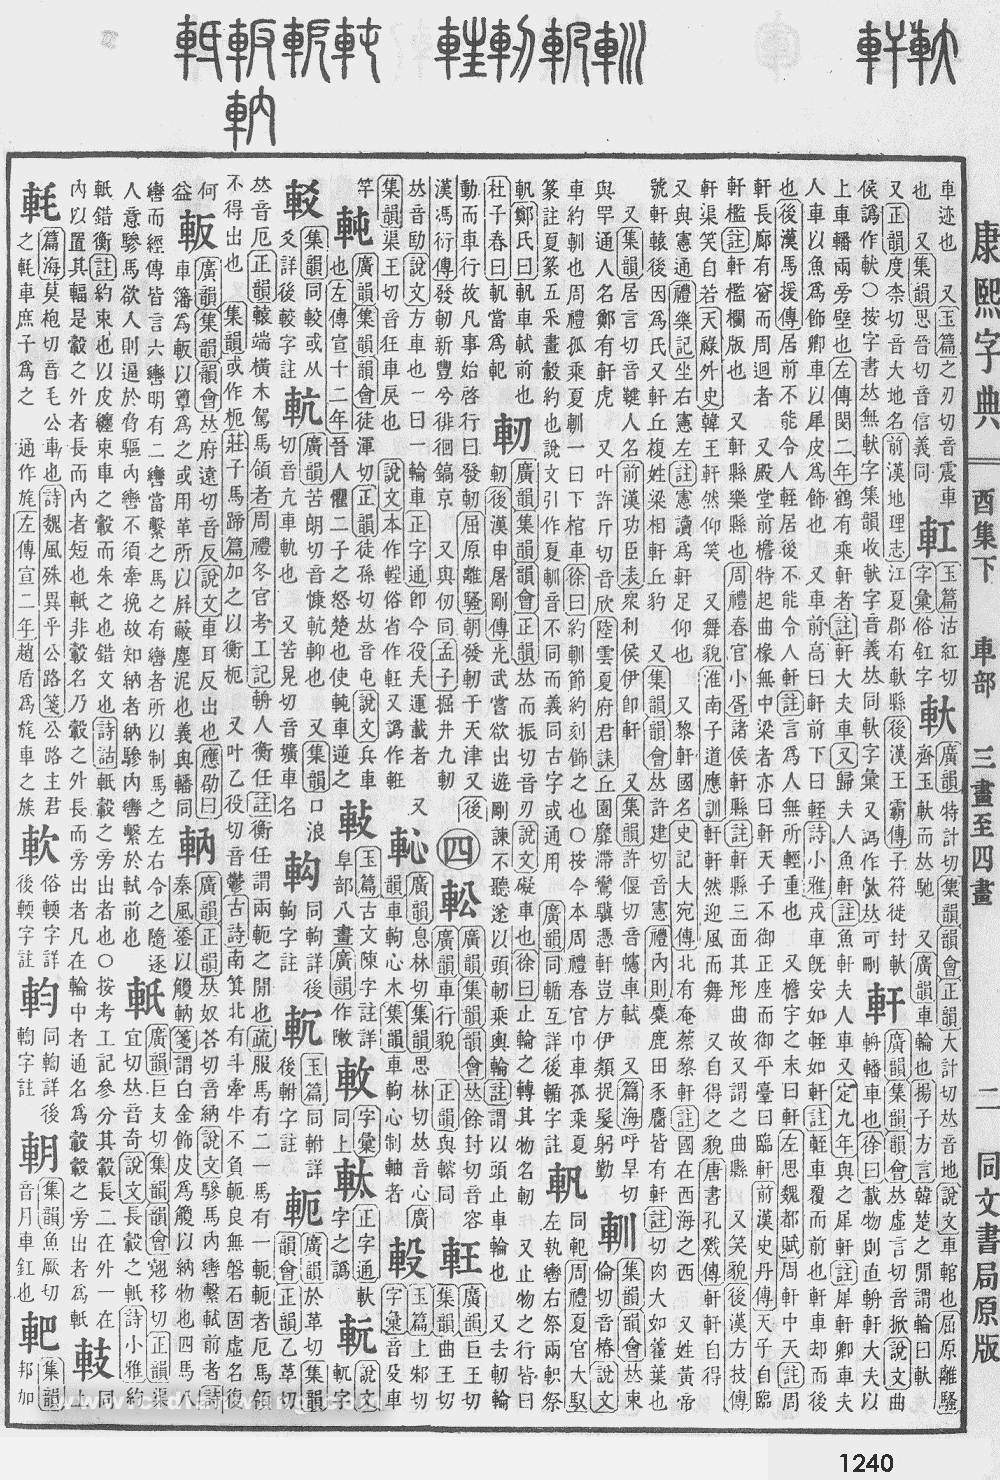 康熙字典掃描版第1240頁